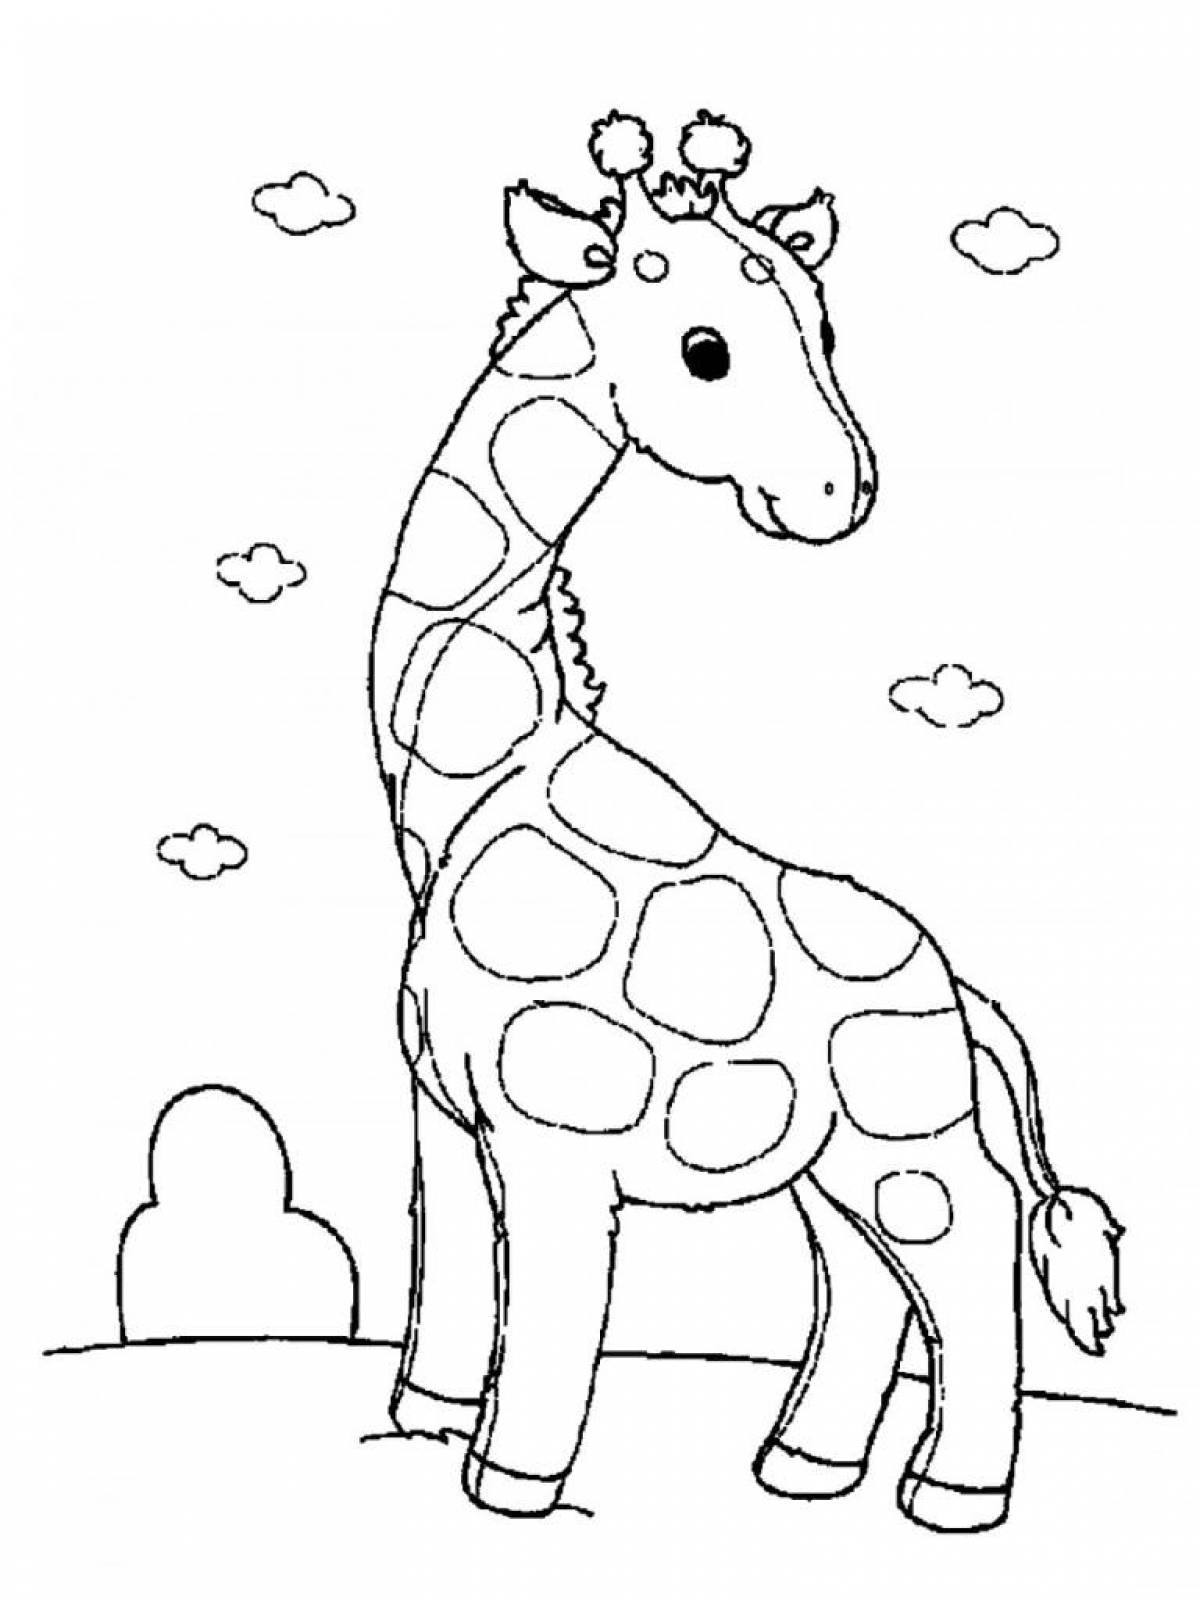 Увлекательная раскраска жирафа для малышей